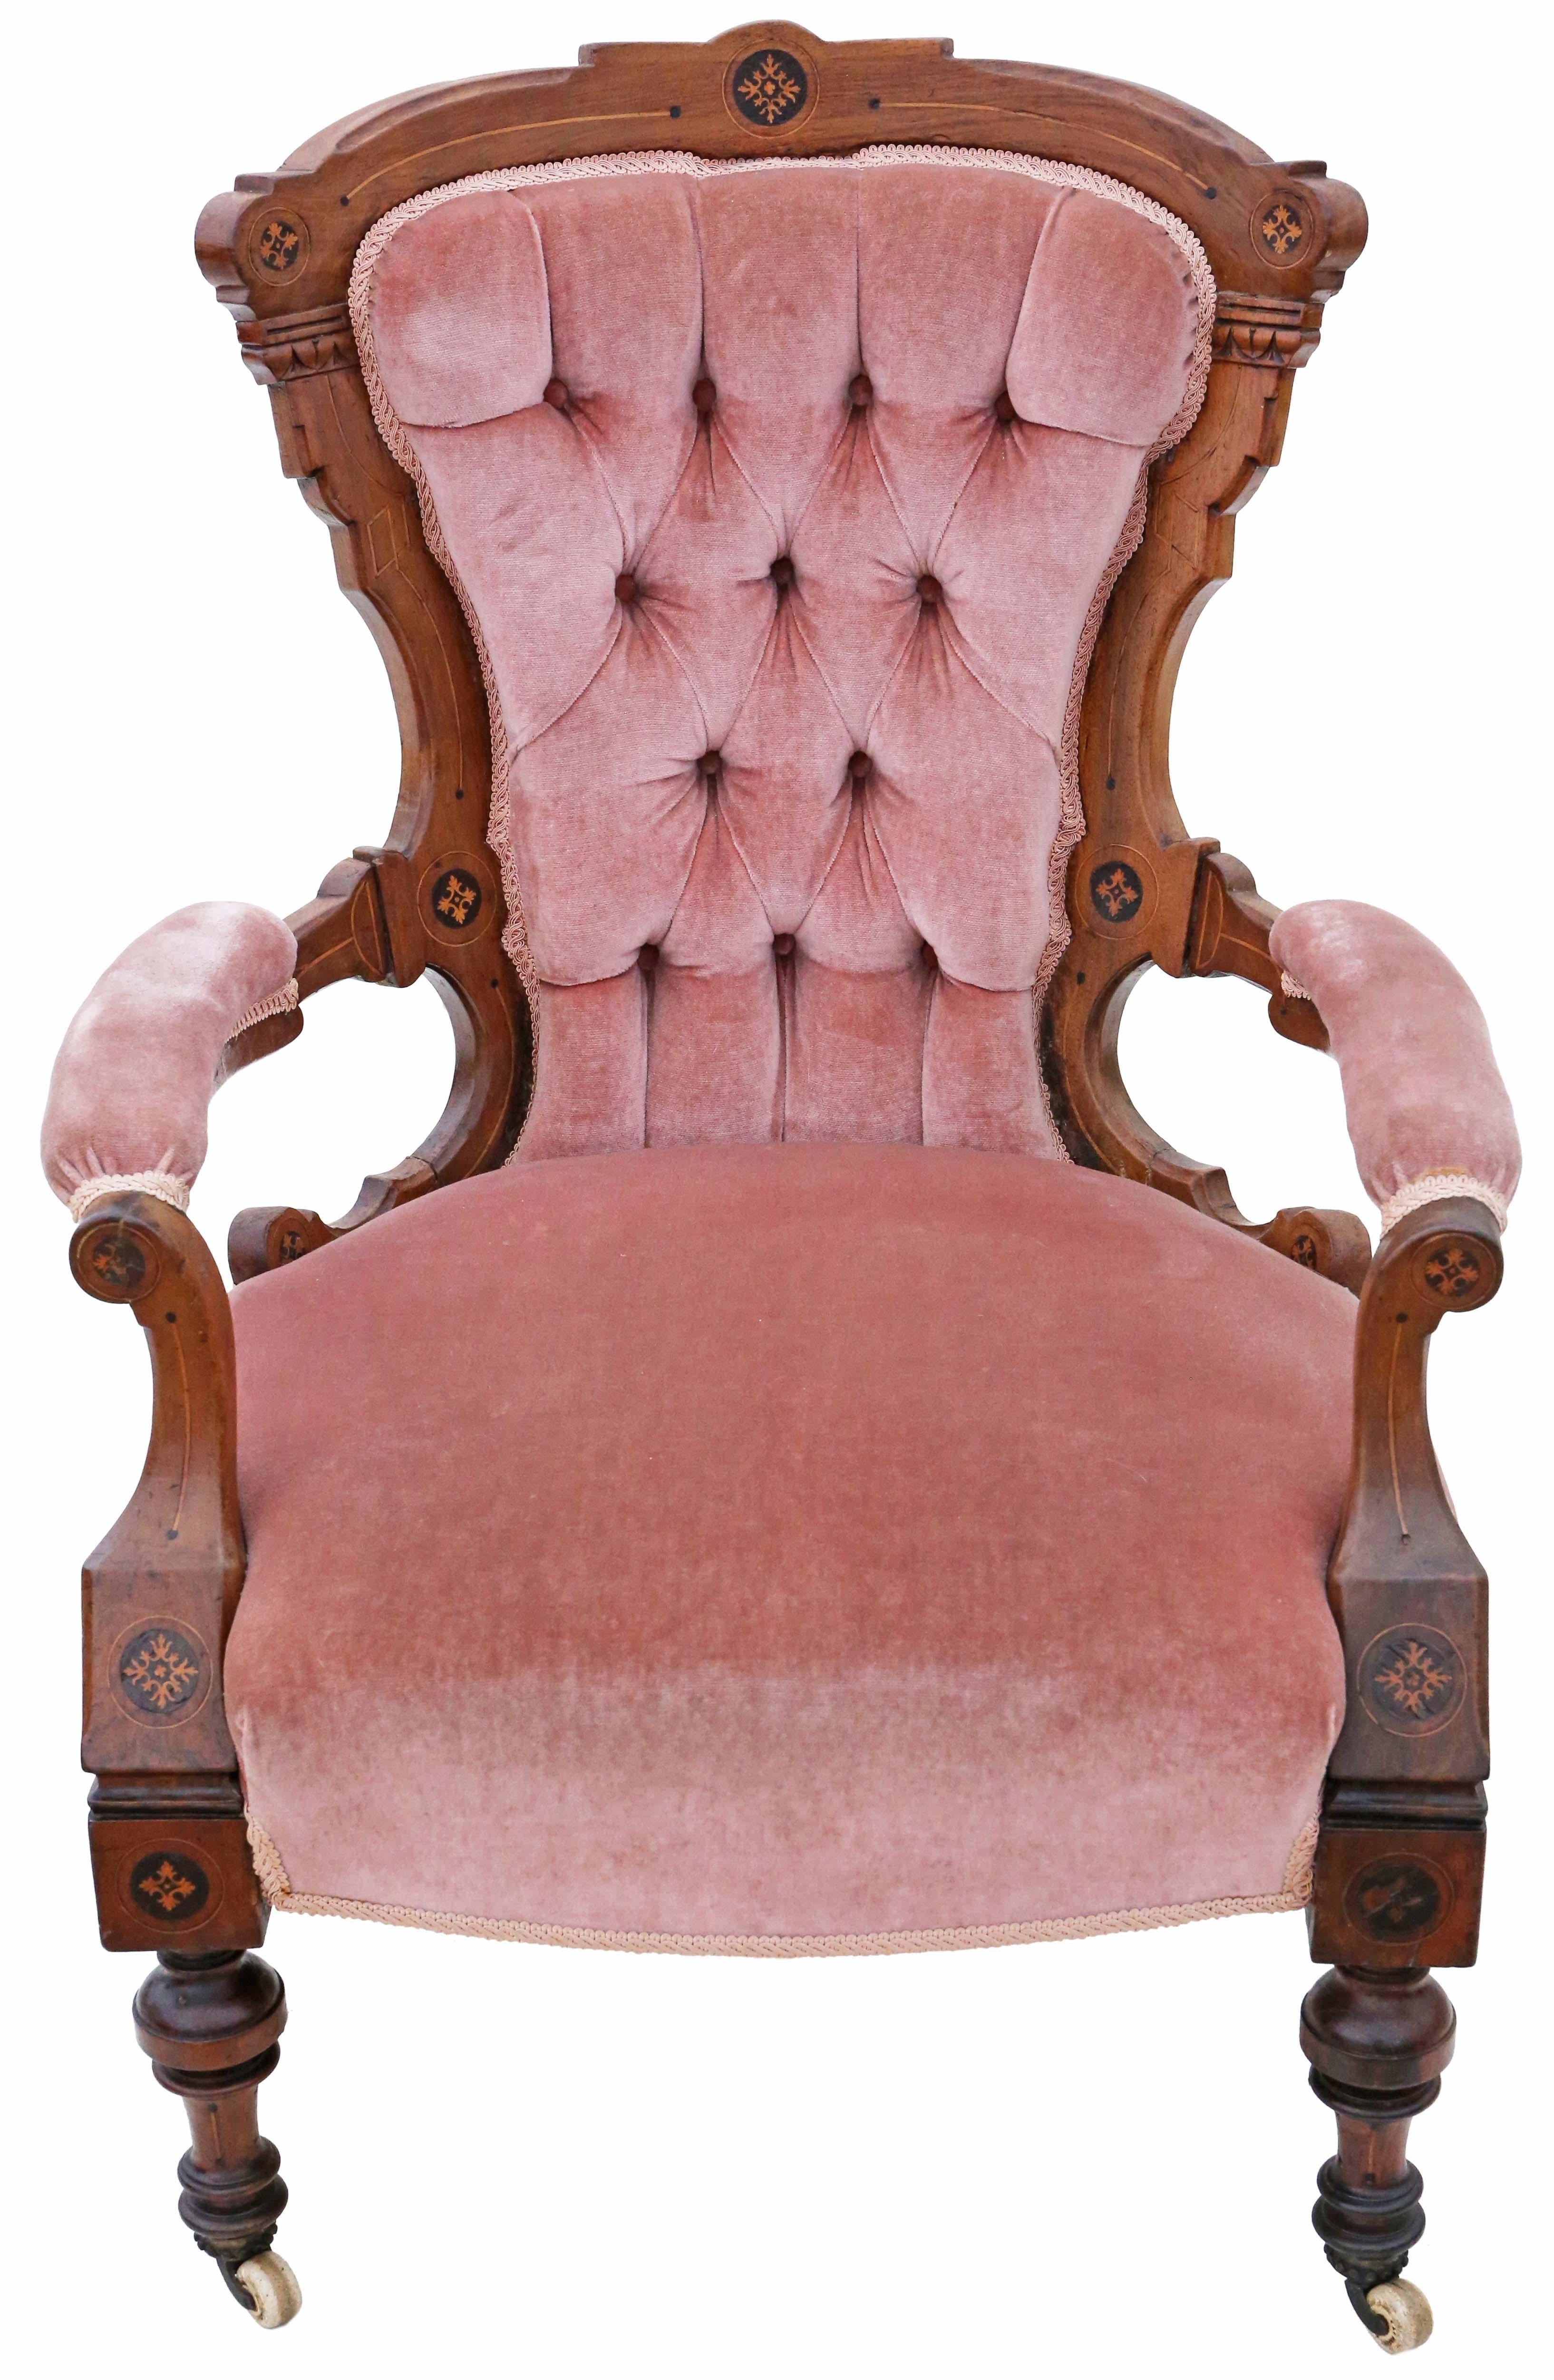 Antike Qualität viktorianischen Ästhetik eingelegten Nussbaum Sessel C1880. Sehr attraktive ästhetische Einlagen.

Solide, keine losen Verbindungen und kein Holzwurm. Voller Alter, Charakter und Charme. Ein sehr dekorativer Stuhl. Der dunkelrosa